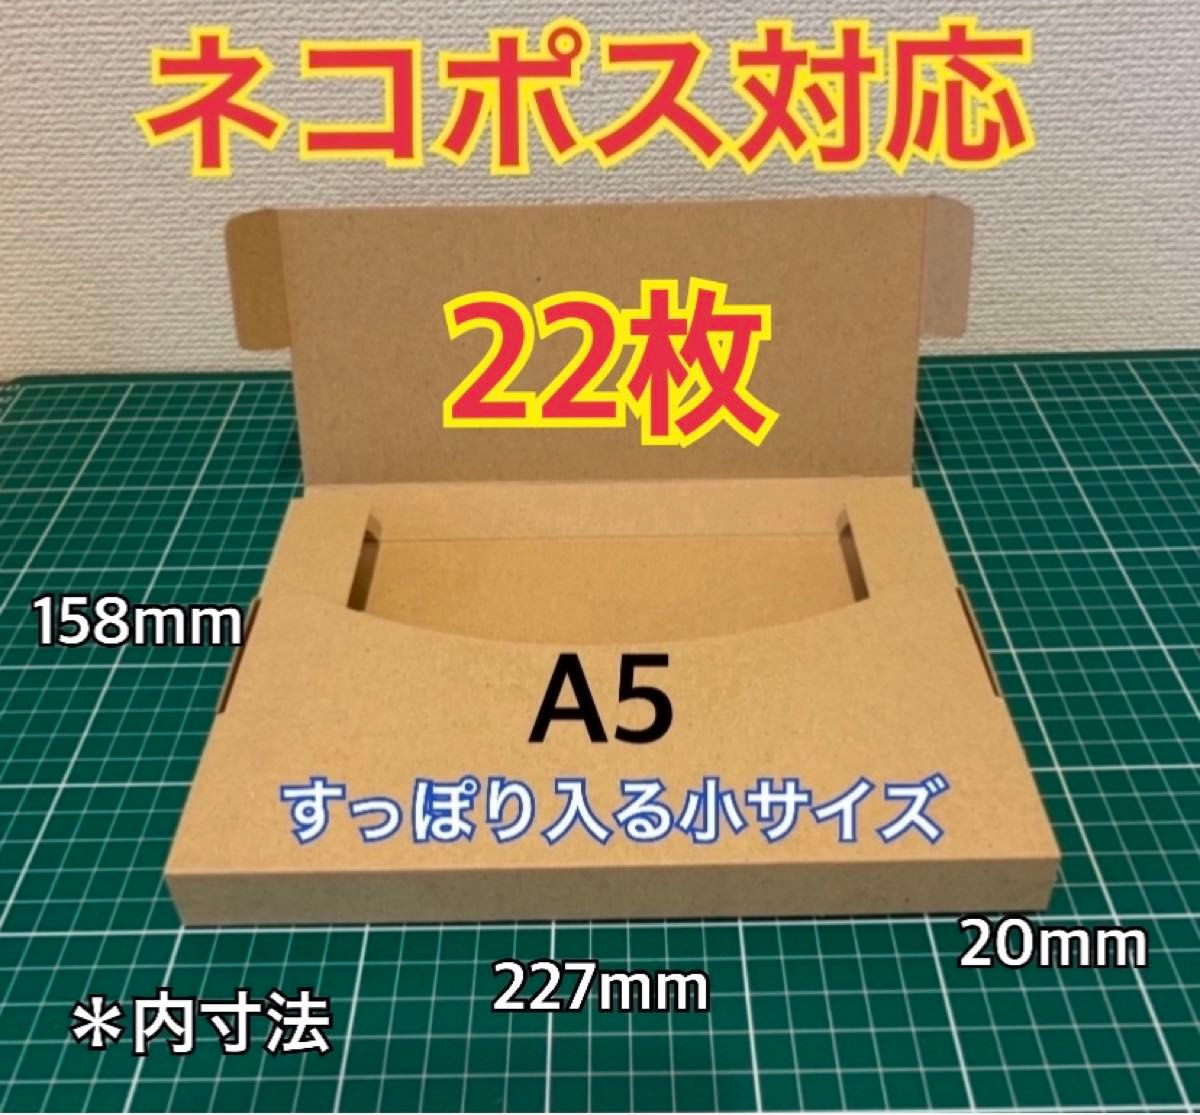 ♪ ♪ 【22枚】A5サイズ(小)ヤフネコ対応 段ボール箱